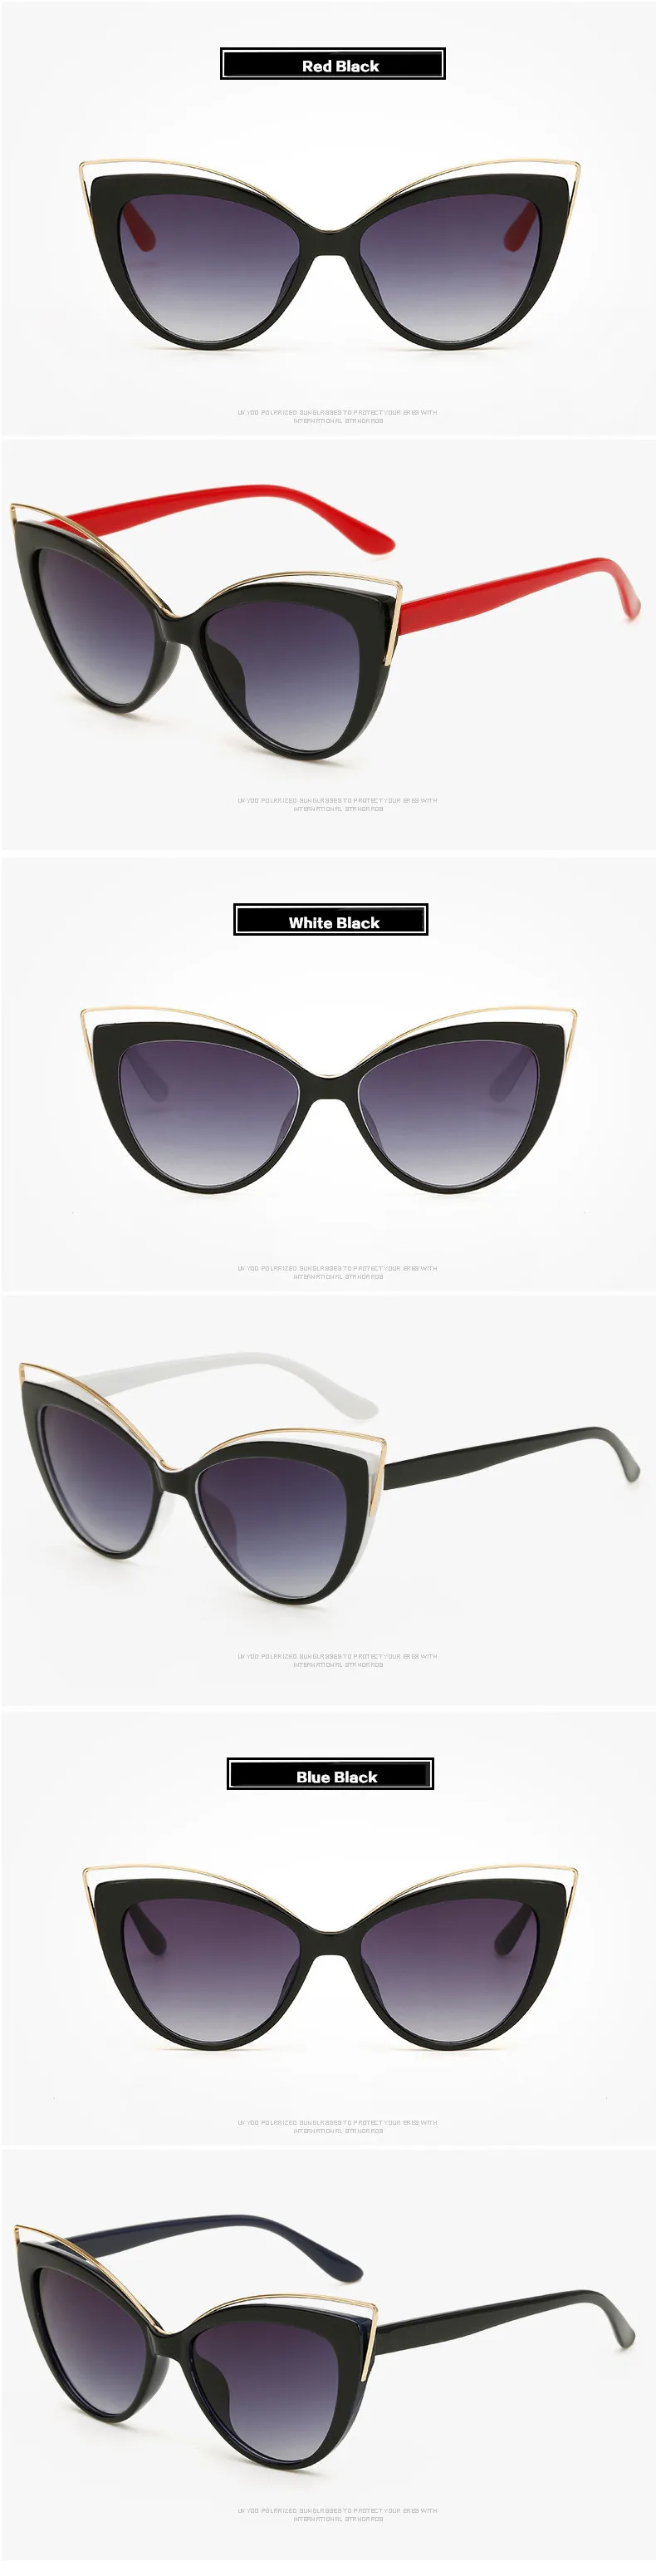 Роскошные Шарм Cat Eye Солнцезащитные очки Женские Модные Винтажные Защита от солнца очки элегантные Curve Дизайн очки ретро Кэти Холмс очки